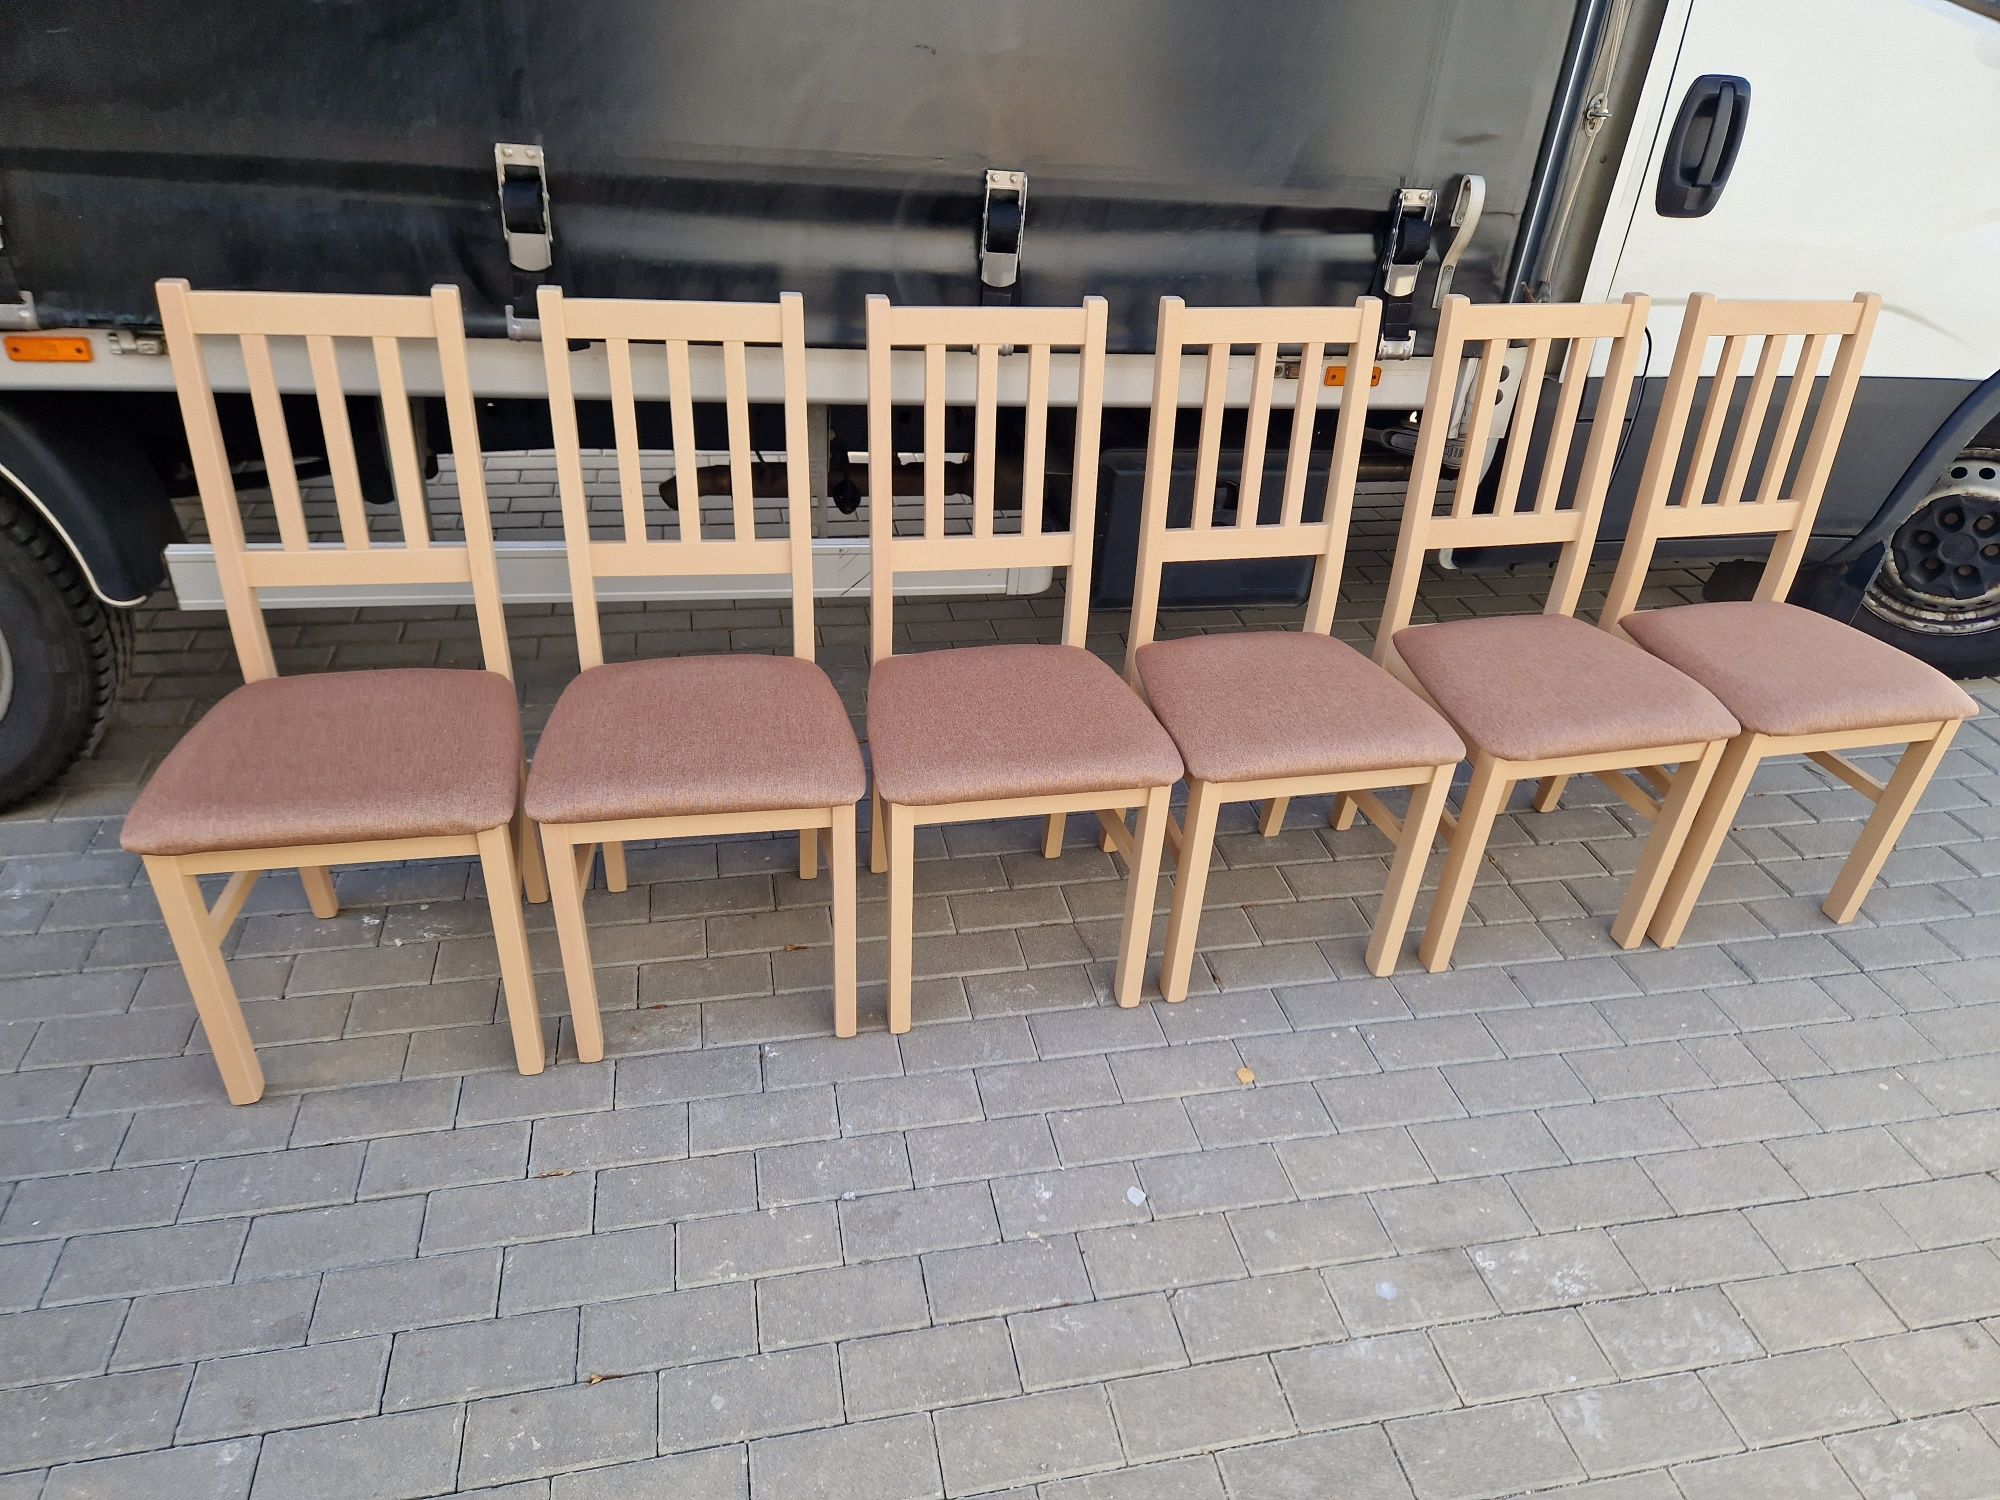 Nowe: Stół 80x140/180 + 6 krzeseł, 38 kolorów, transport cała POLSKA